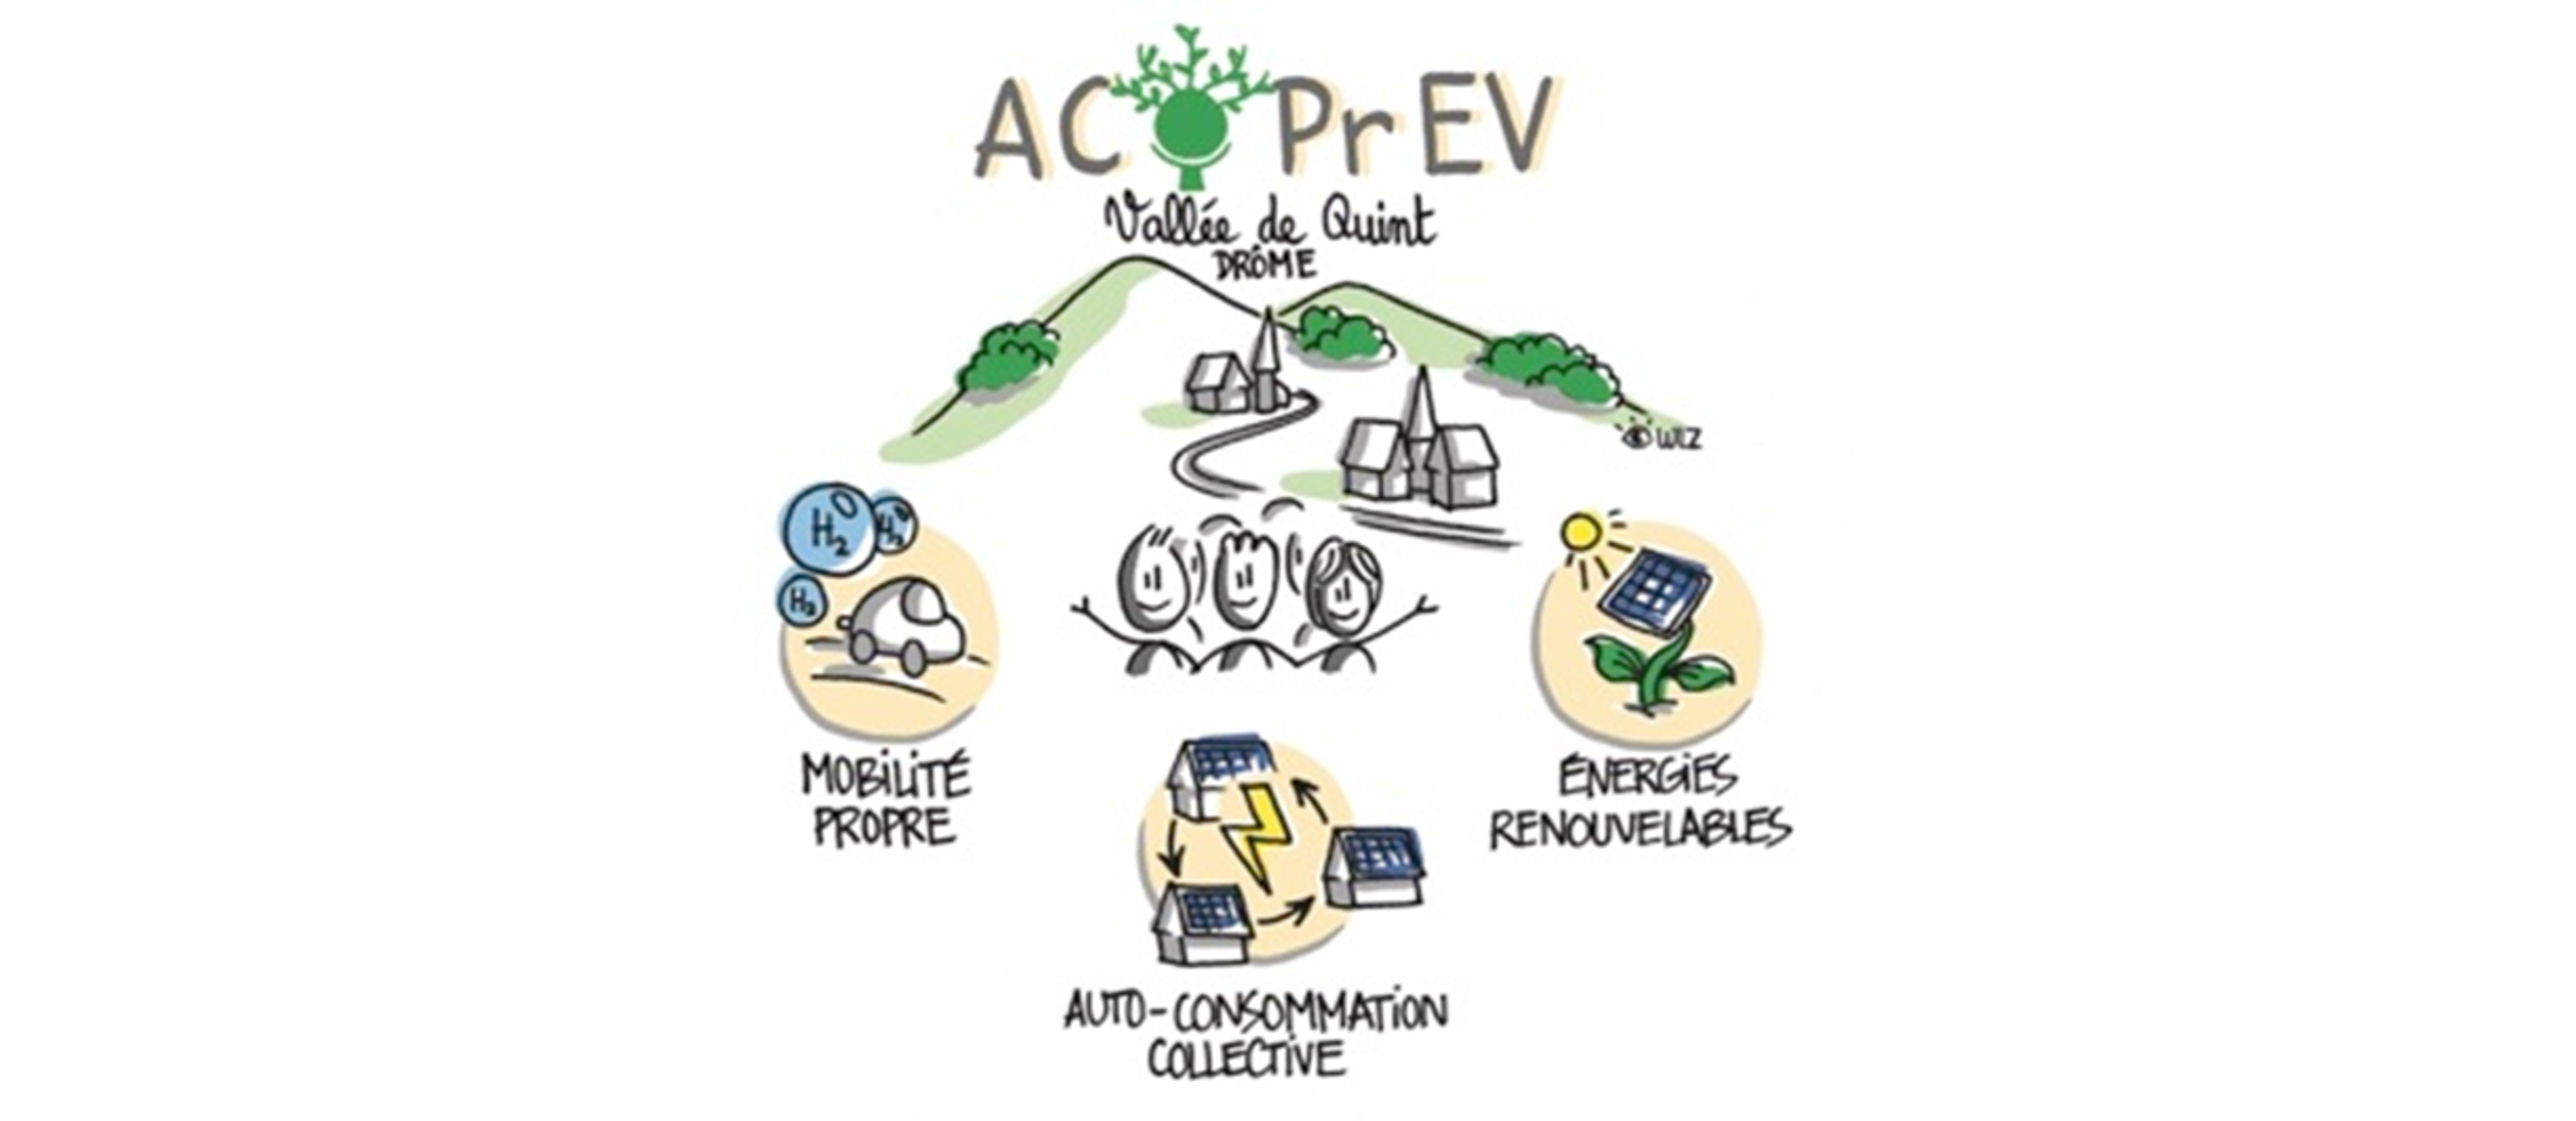 ACOPREV Autoconsommation collective mobilite propre et energies renouvelables